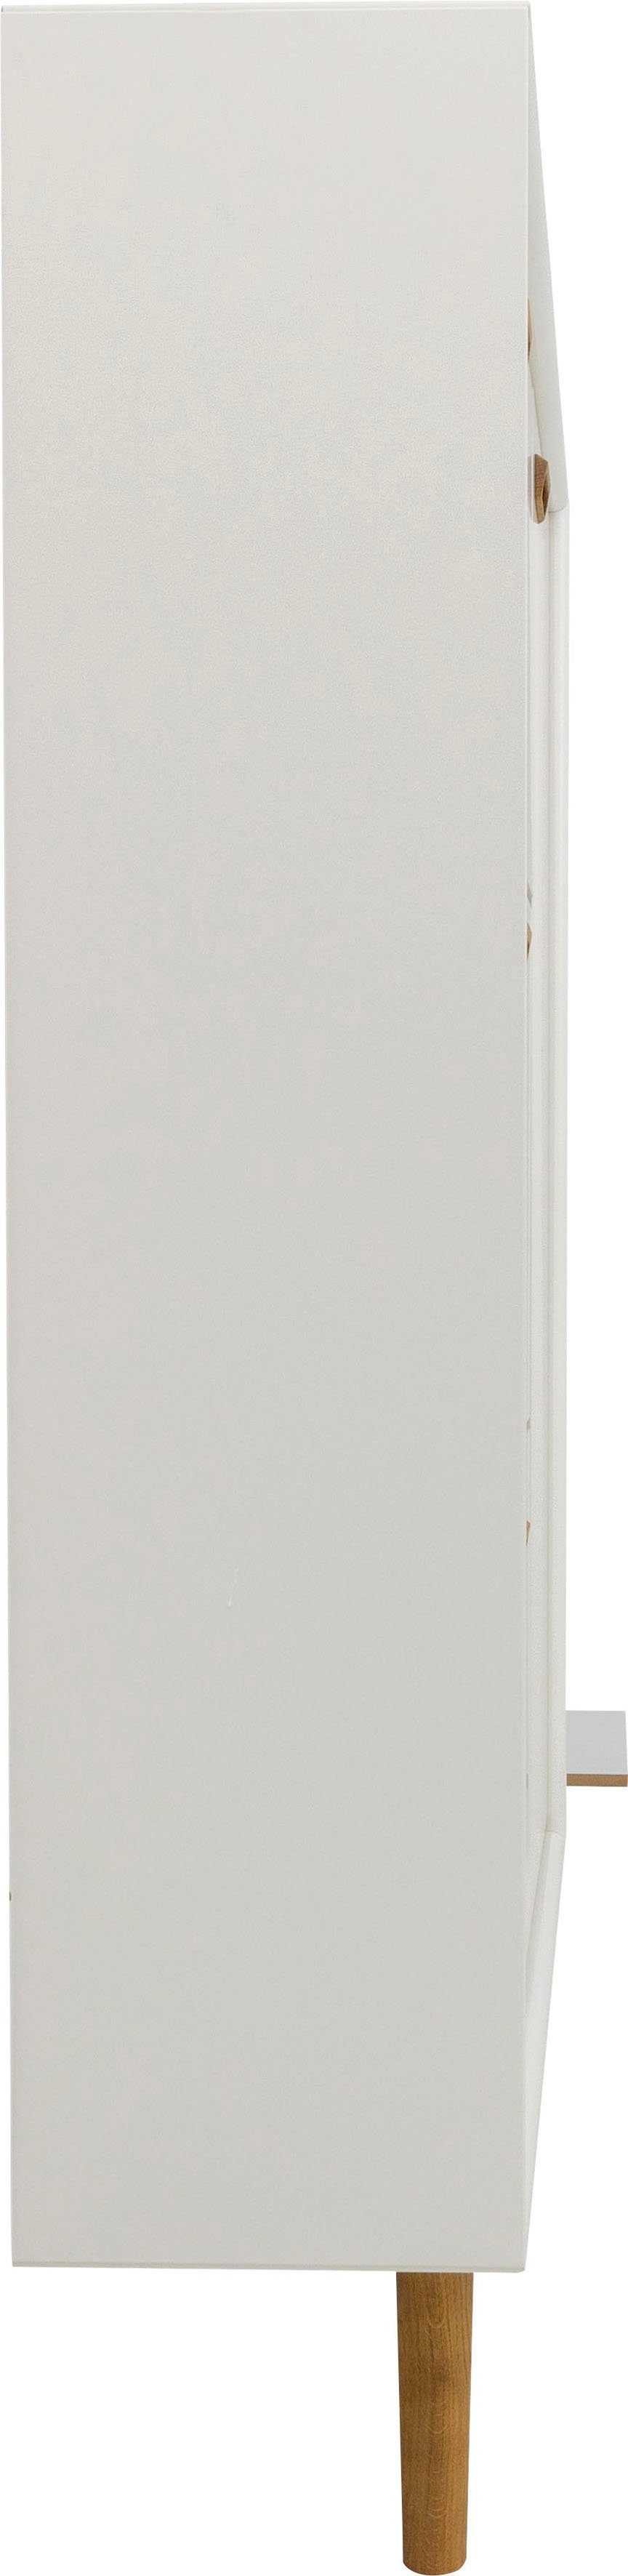 Tenzo Schuhschrank SVEA mit 1 und Design studio Klappen, Design von Tür Tenzo 3 white